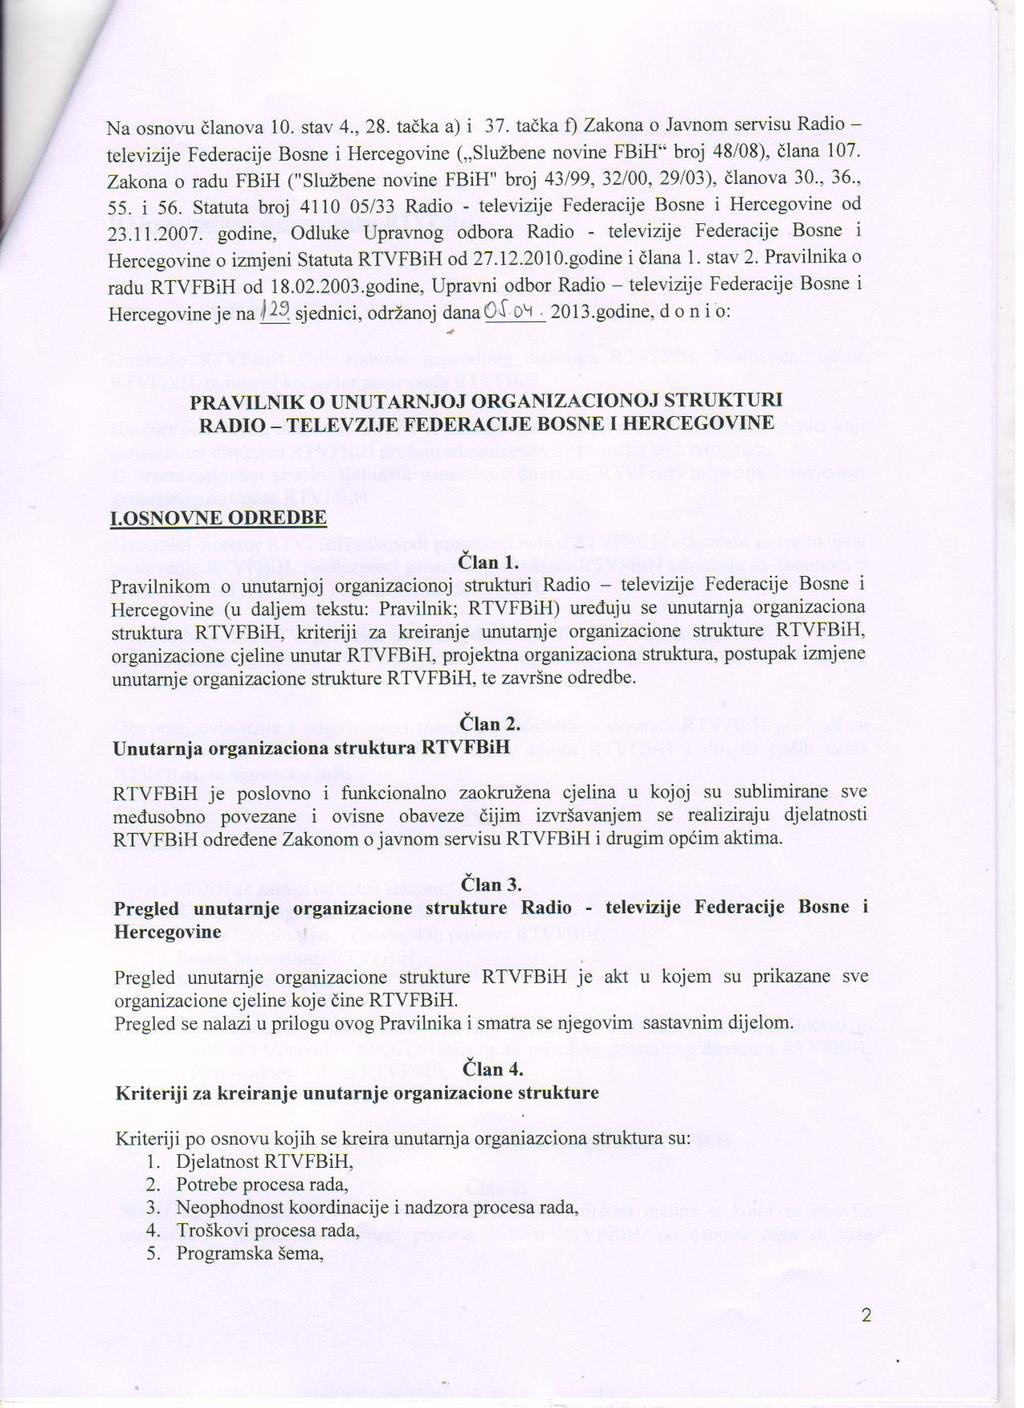 Na osnovu članova 10. stav 4., 28. tačka a) i 37. tačka f) Zakona o Javnom servisu Radio televizije Federacije Bosne i Hercegovine ( Službene novine FBiH broj 48/08), člana 107.